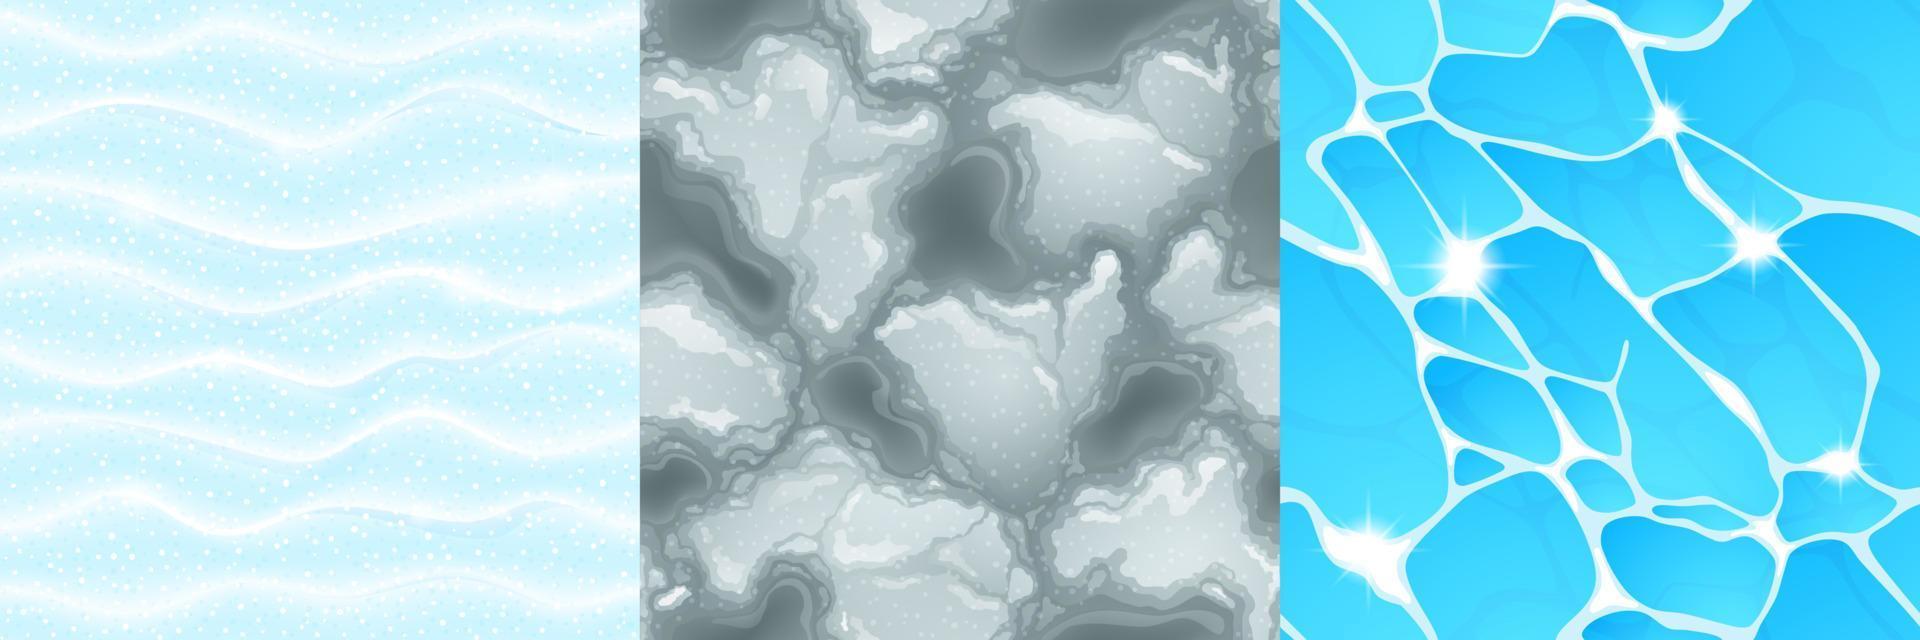 texturen van water, sneeuw en slush vector